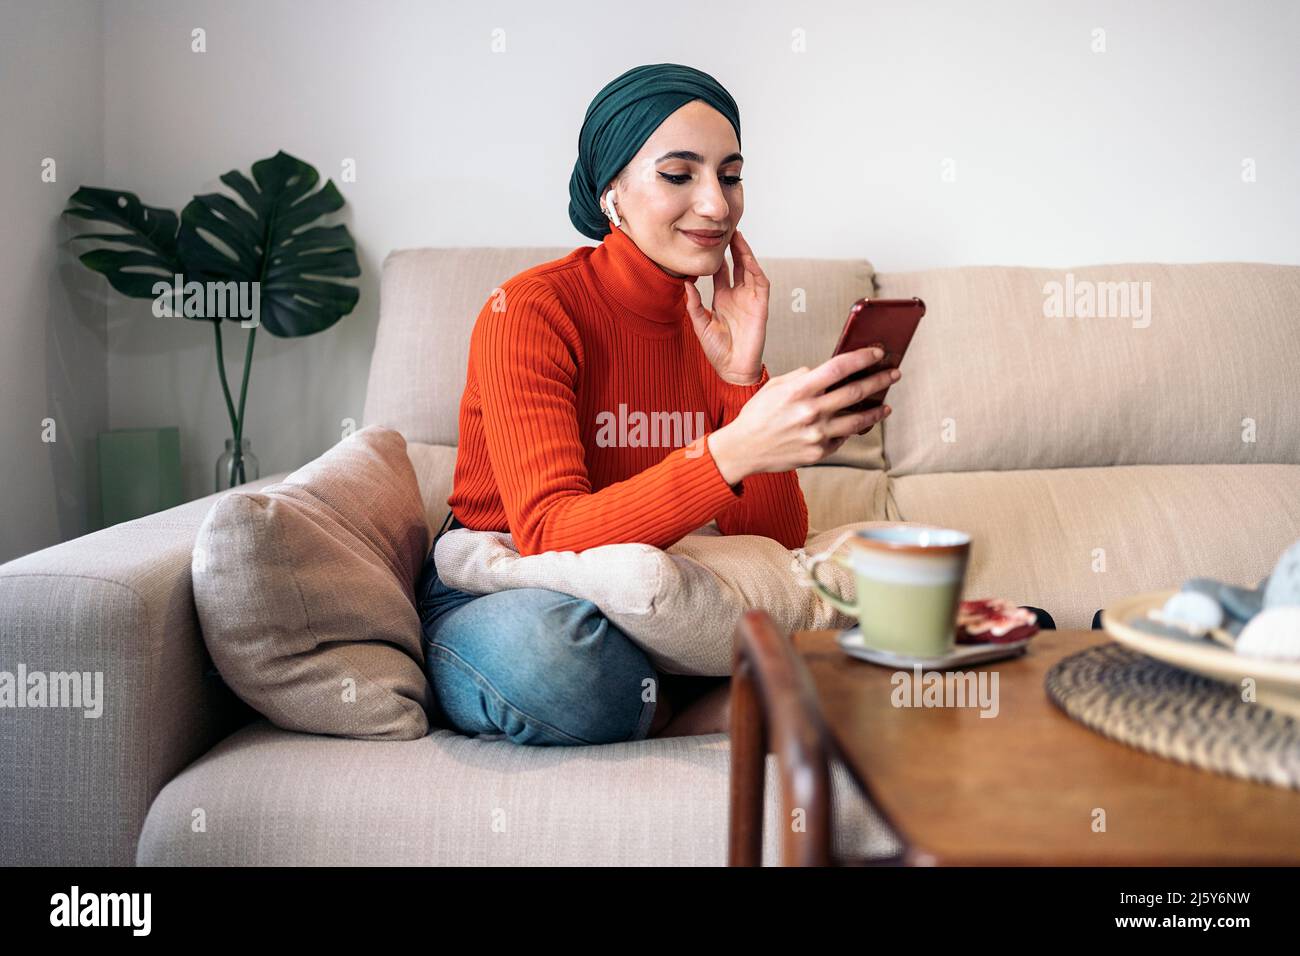 Femme musulmane positive vêtue de vêtements décontractés et foulard se touchant le visage et parcourant les médias sociaux sur un téléphone portable tout en étant assise à pieds croisés sur un canapé et un sil Banque D'Images